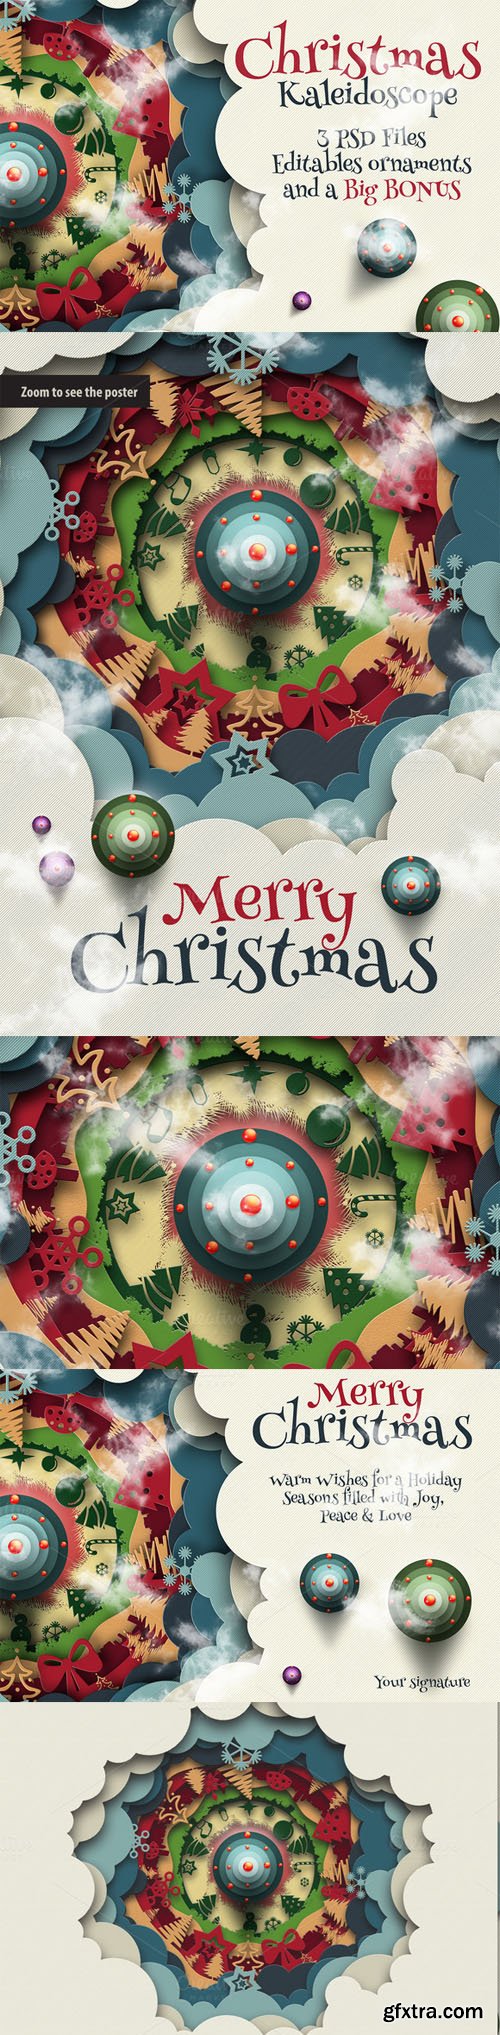 Christmas Kaleidoscope Animated - CM 119298